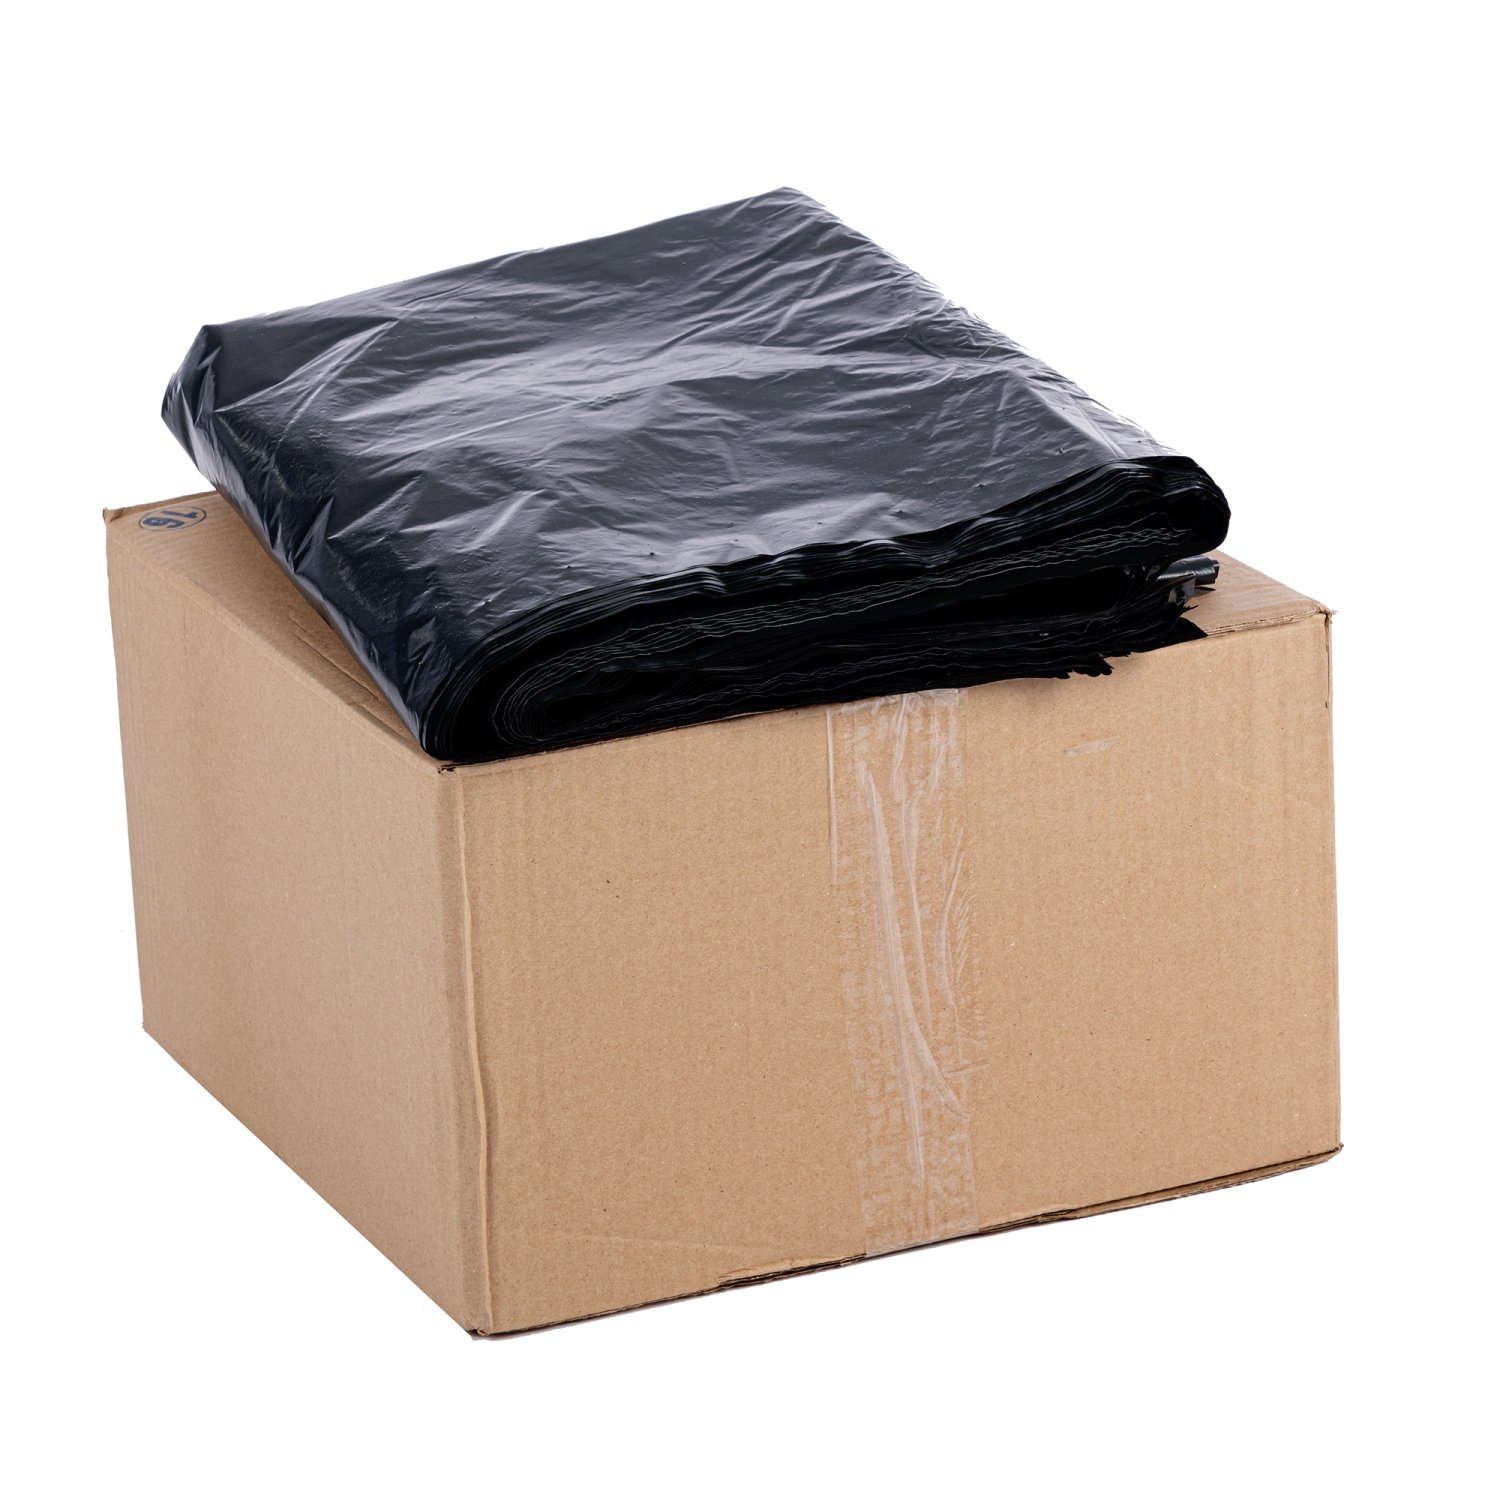 KN67-50-ZW Palletbox zakken Palletboxzakken bestellen
Heeft jouw palletbox een beschermende binnenbekleding nodig om de inhoud te beschermen tegen vuil, vocht en stof? Knapzak biedt de perfecte oplossing: palletbox zakken. Deze zakken zijn specifiek ontworpen voor palletboxen en zorgen ervoor dat de box schoon blijft. Ideaal voor opslag, transport en/of het verzamelen van producten en goederen. Gemaakt van scheurbestendig materiaal en ruim genoeg om goed af te sluiten aan de bovenkant.

Ontdek vandaag nog de voordelen van onze palletboxzakken en maak een bewuste keuze voor efficiënte afvalinzameling!